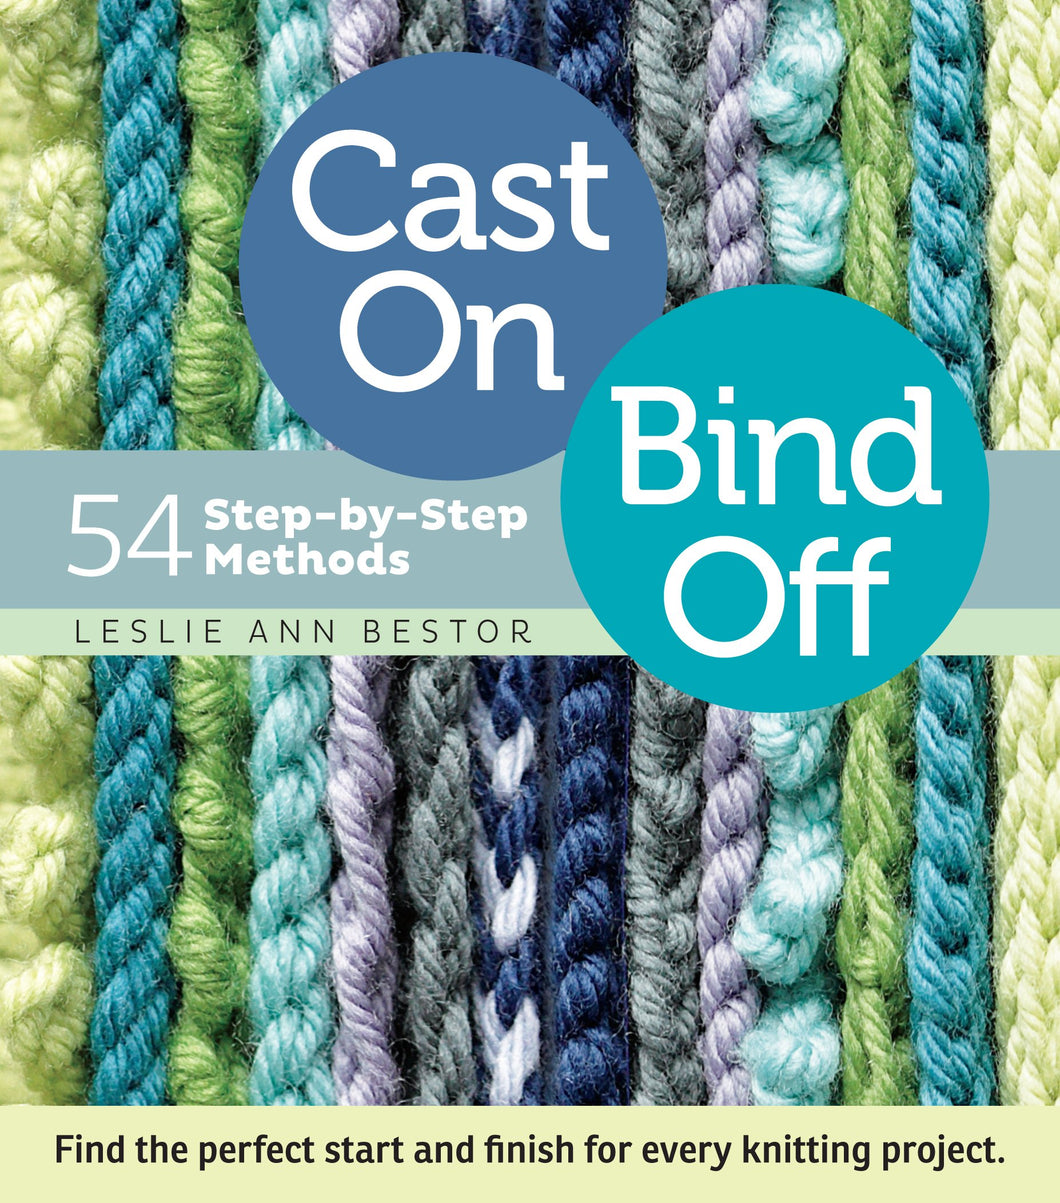 Cast On, Bind Off: 54 Step-by-Step Methods, by Leslie Ann Bestor